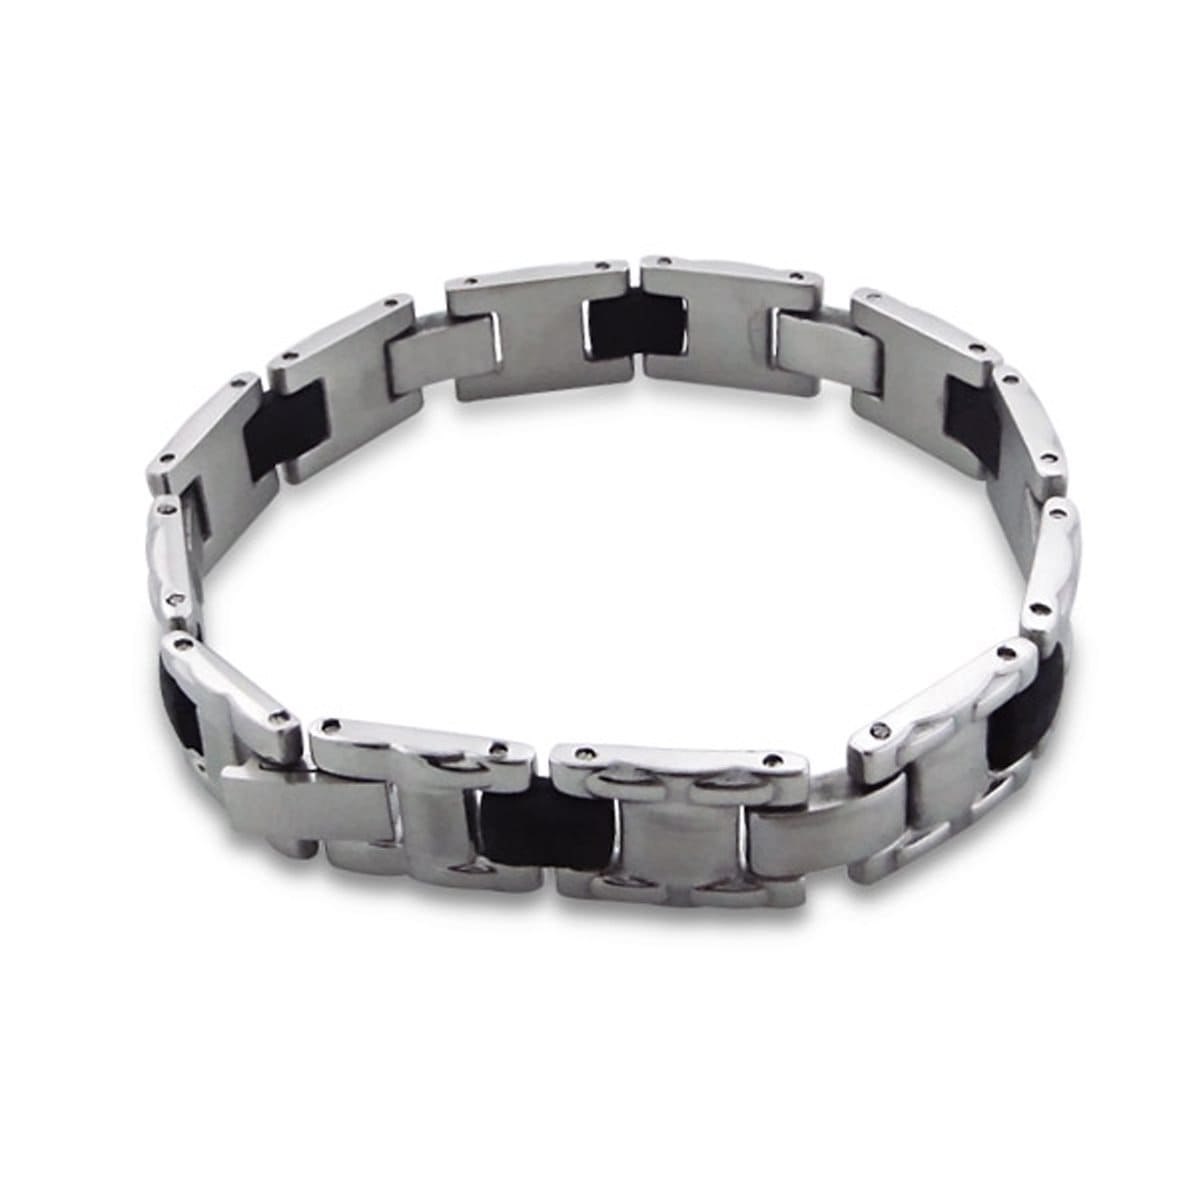 Mens Stainless Steel Bangle Bracelet 20 CM